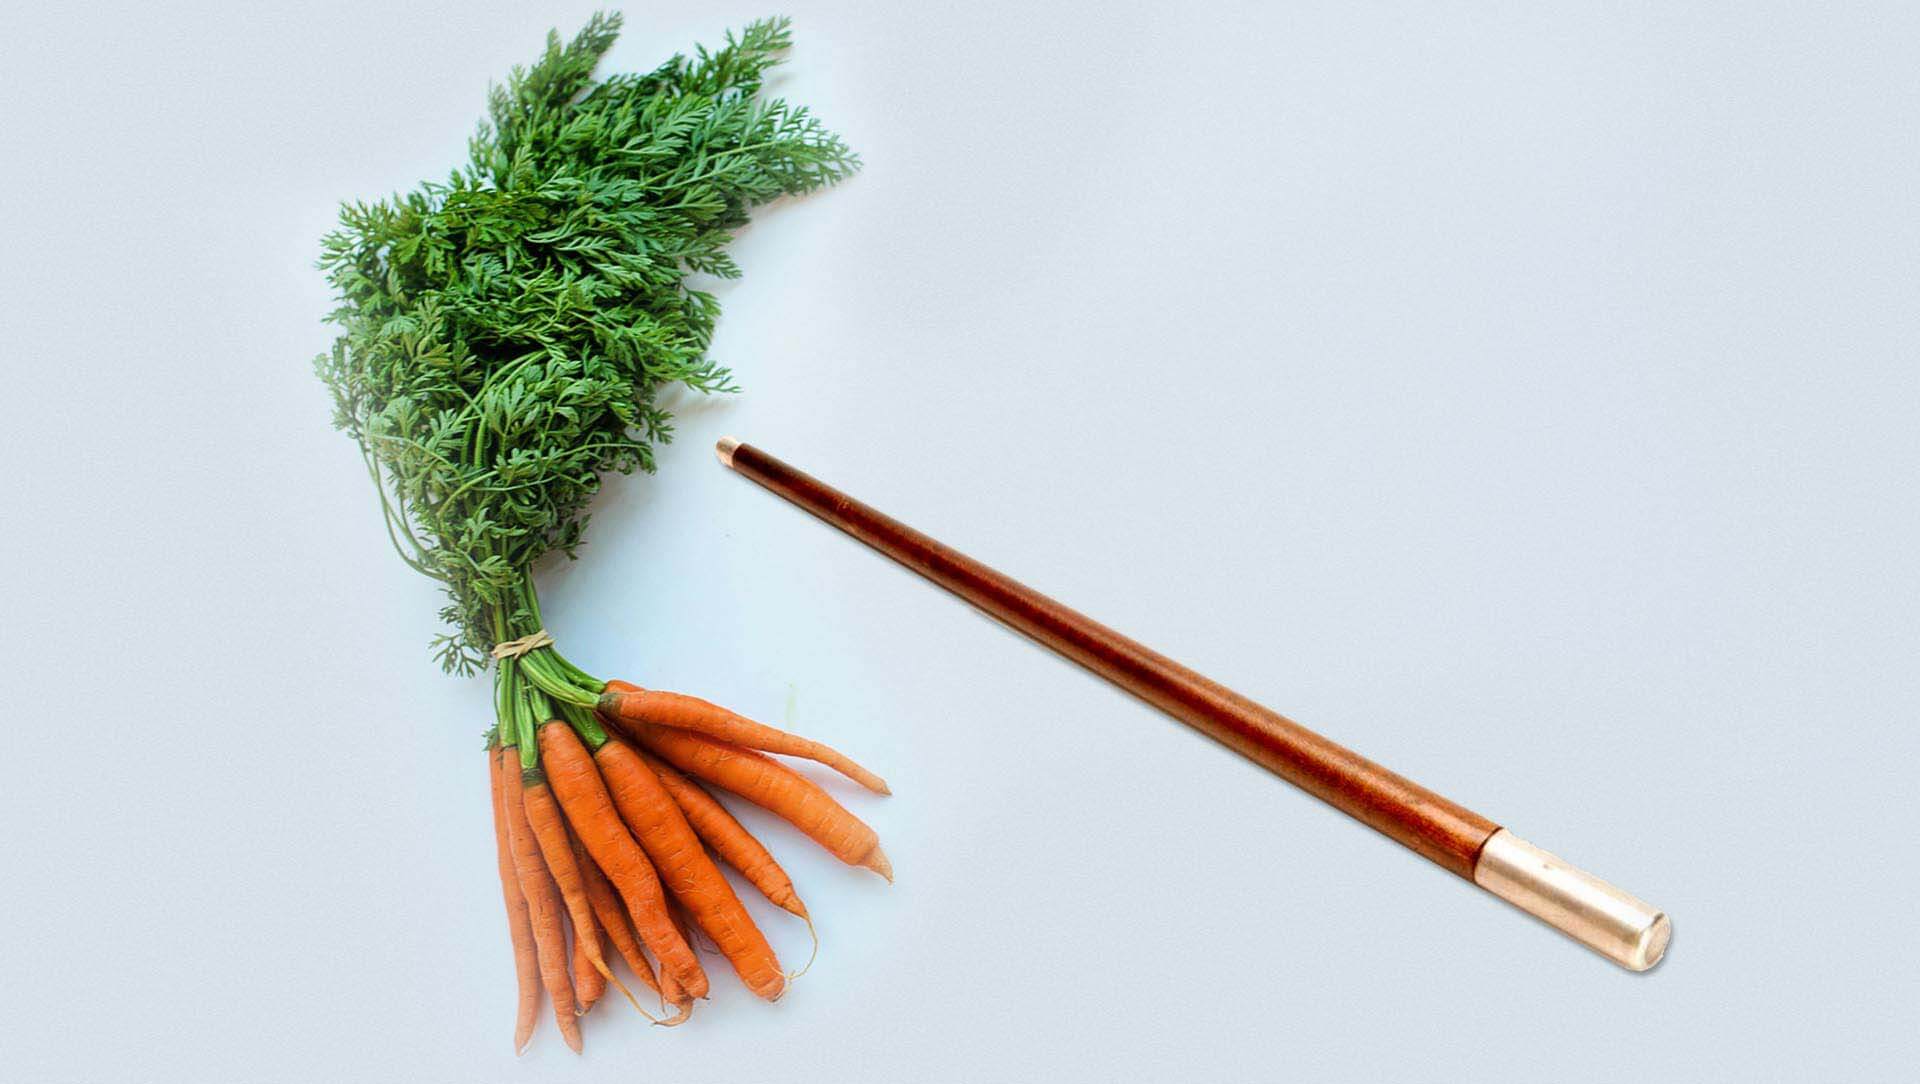 Carrot & Stick Approach